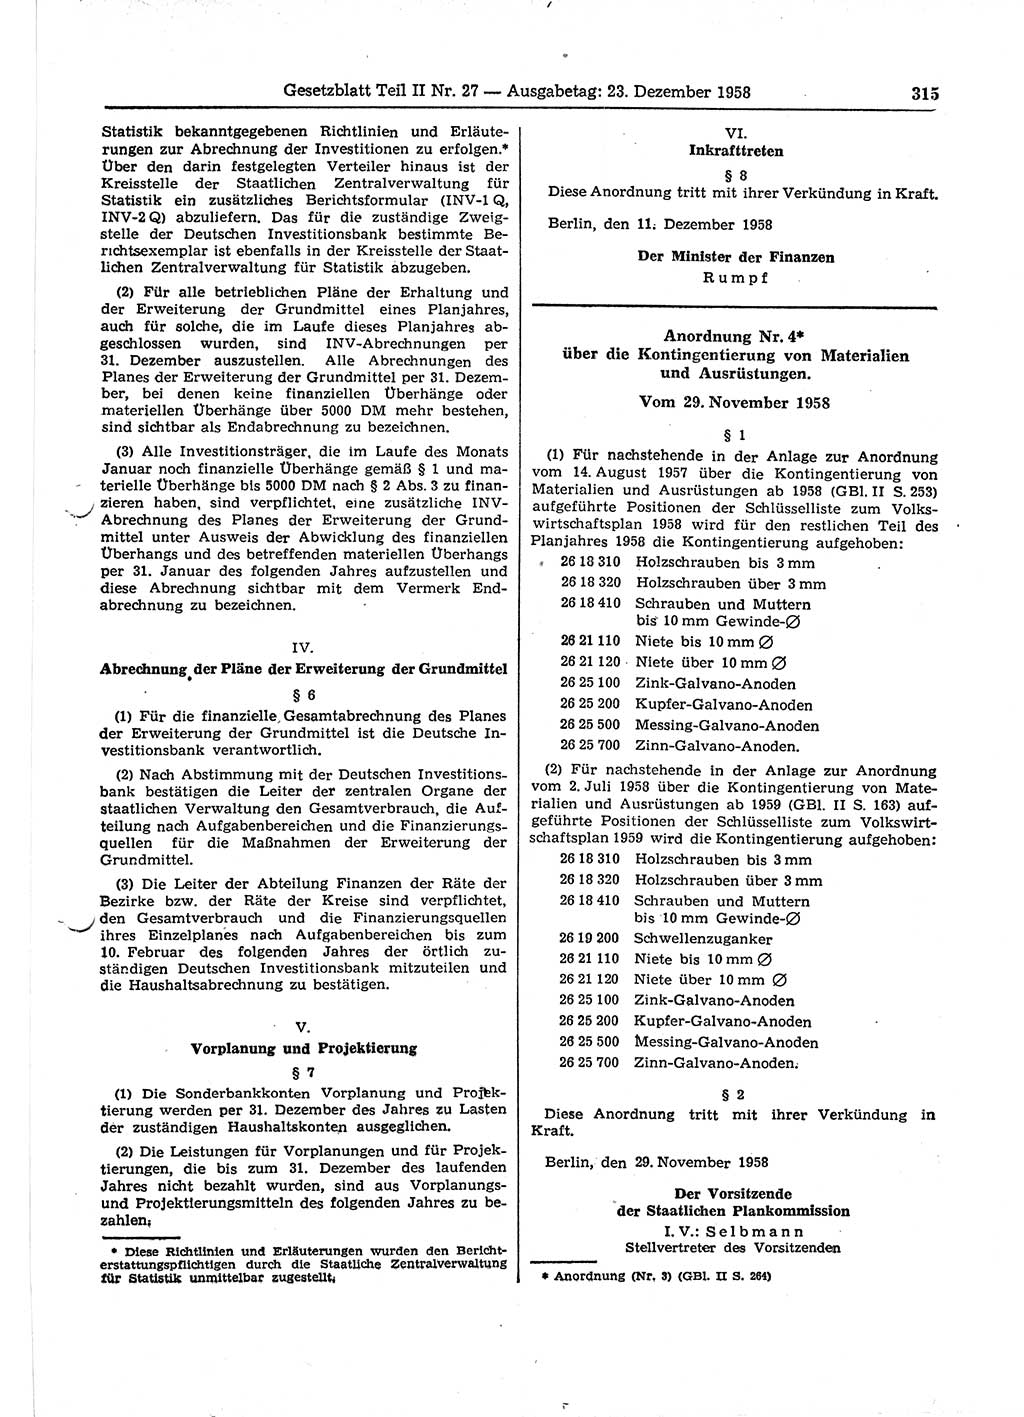 Gesetzblatt (GBl.) der Deutschen Demokratischen Republik (DDR) Teil ⅠⅠ 1958, Seite 315 (GBl. DDR ⅠⅠ 1958, S. 315)